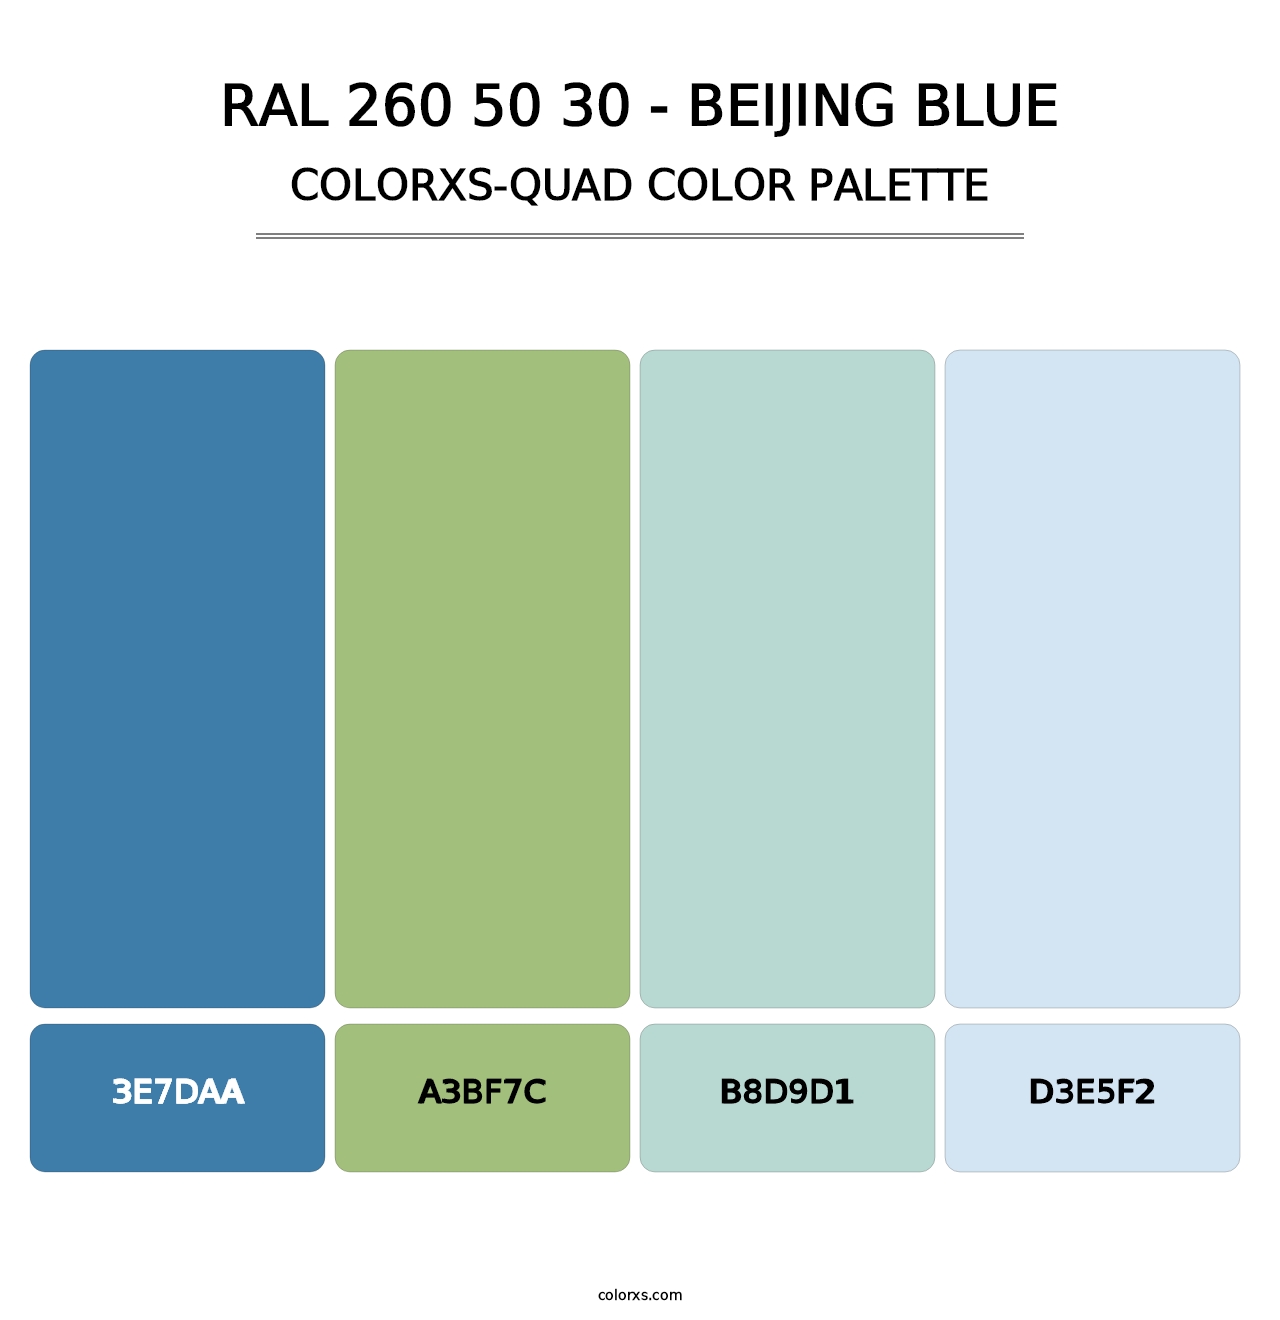 RAL 260 50 30 - Beijing Blue - Colorxs Quad Palette